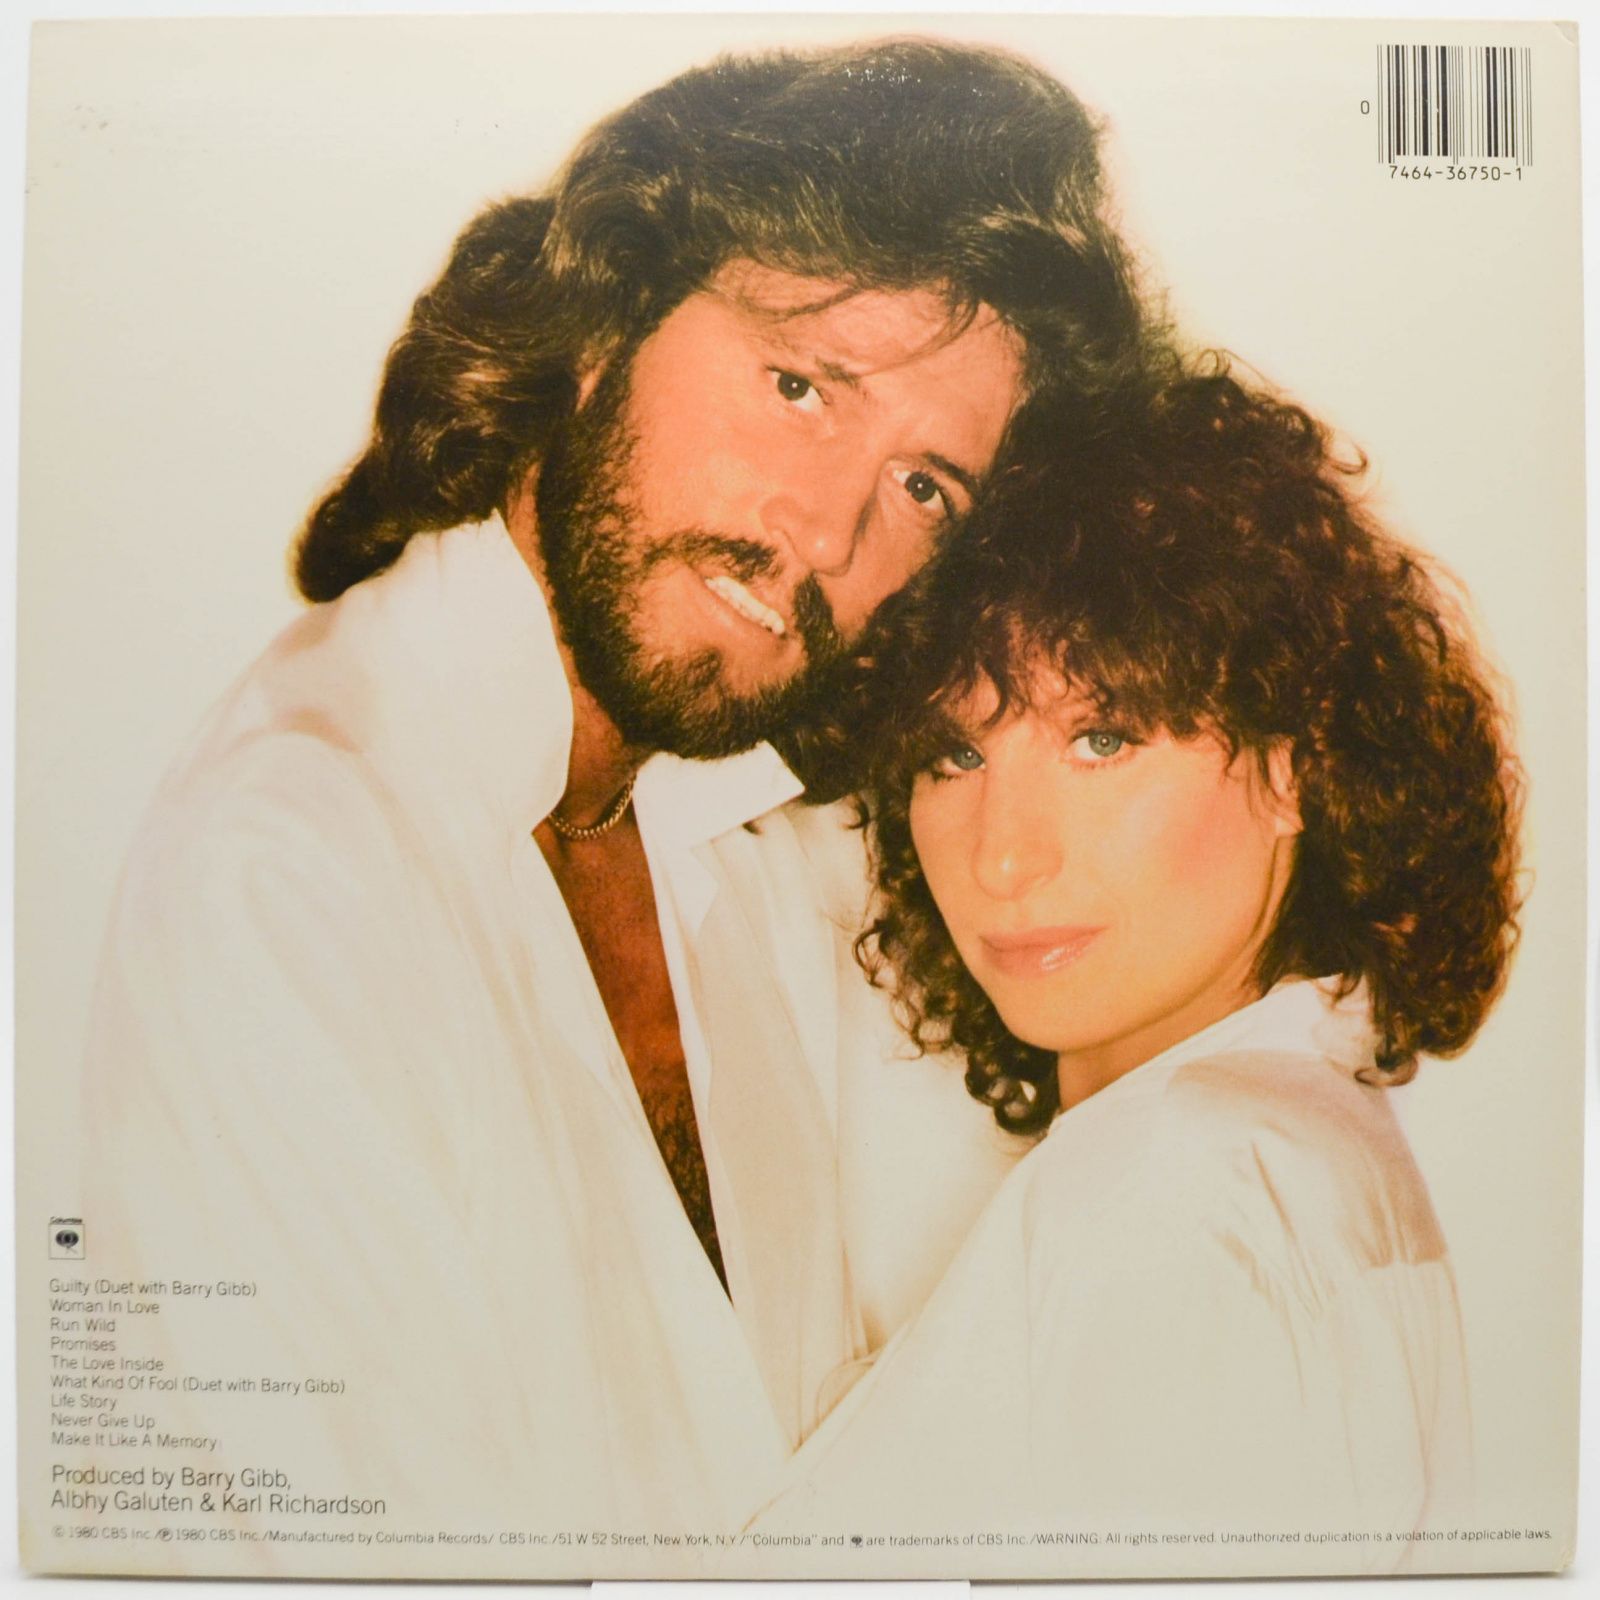 Barbra Streisand — Guilty (1-st, USA), 1980